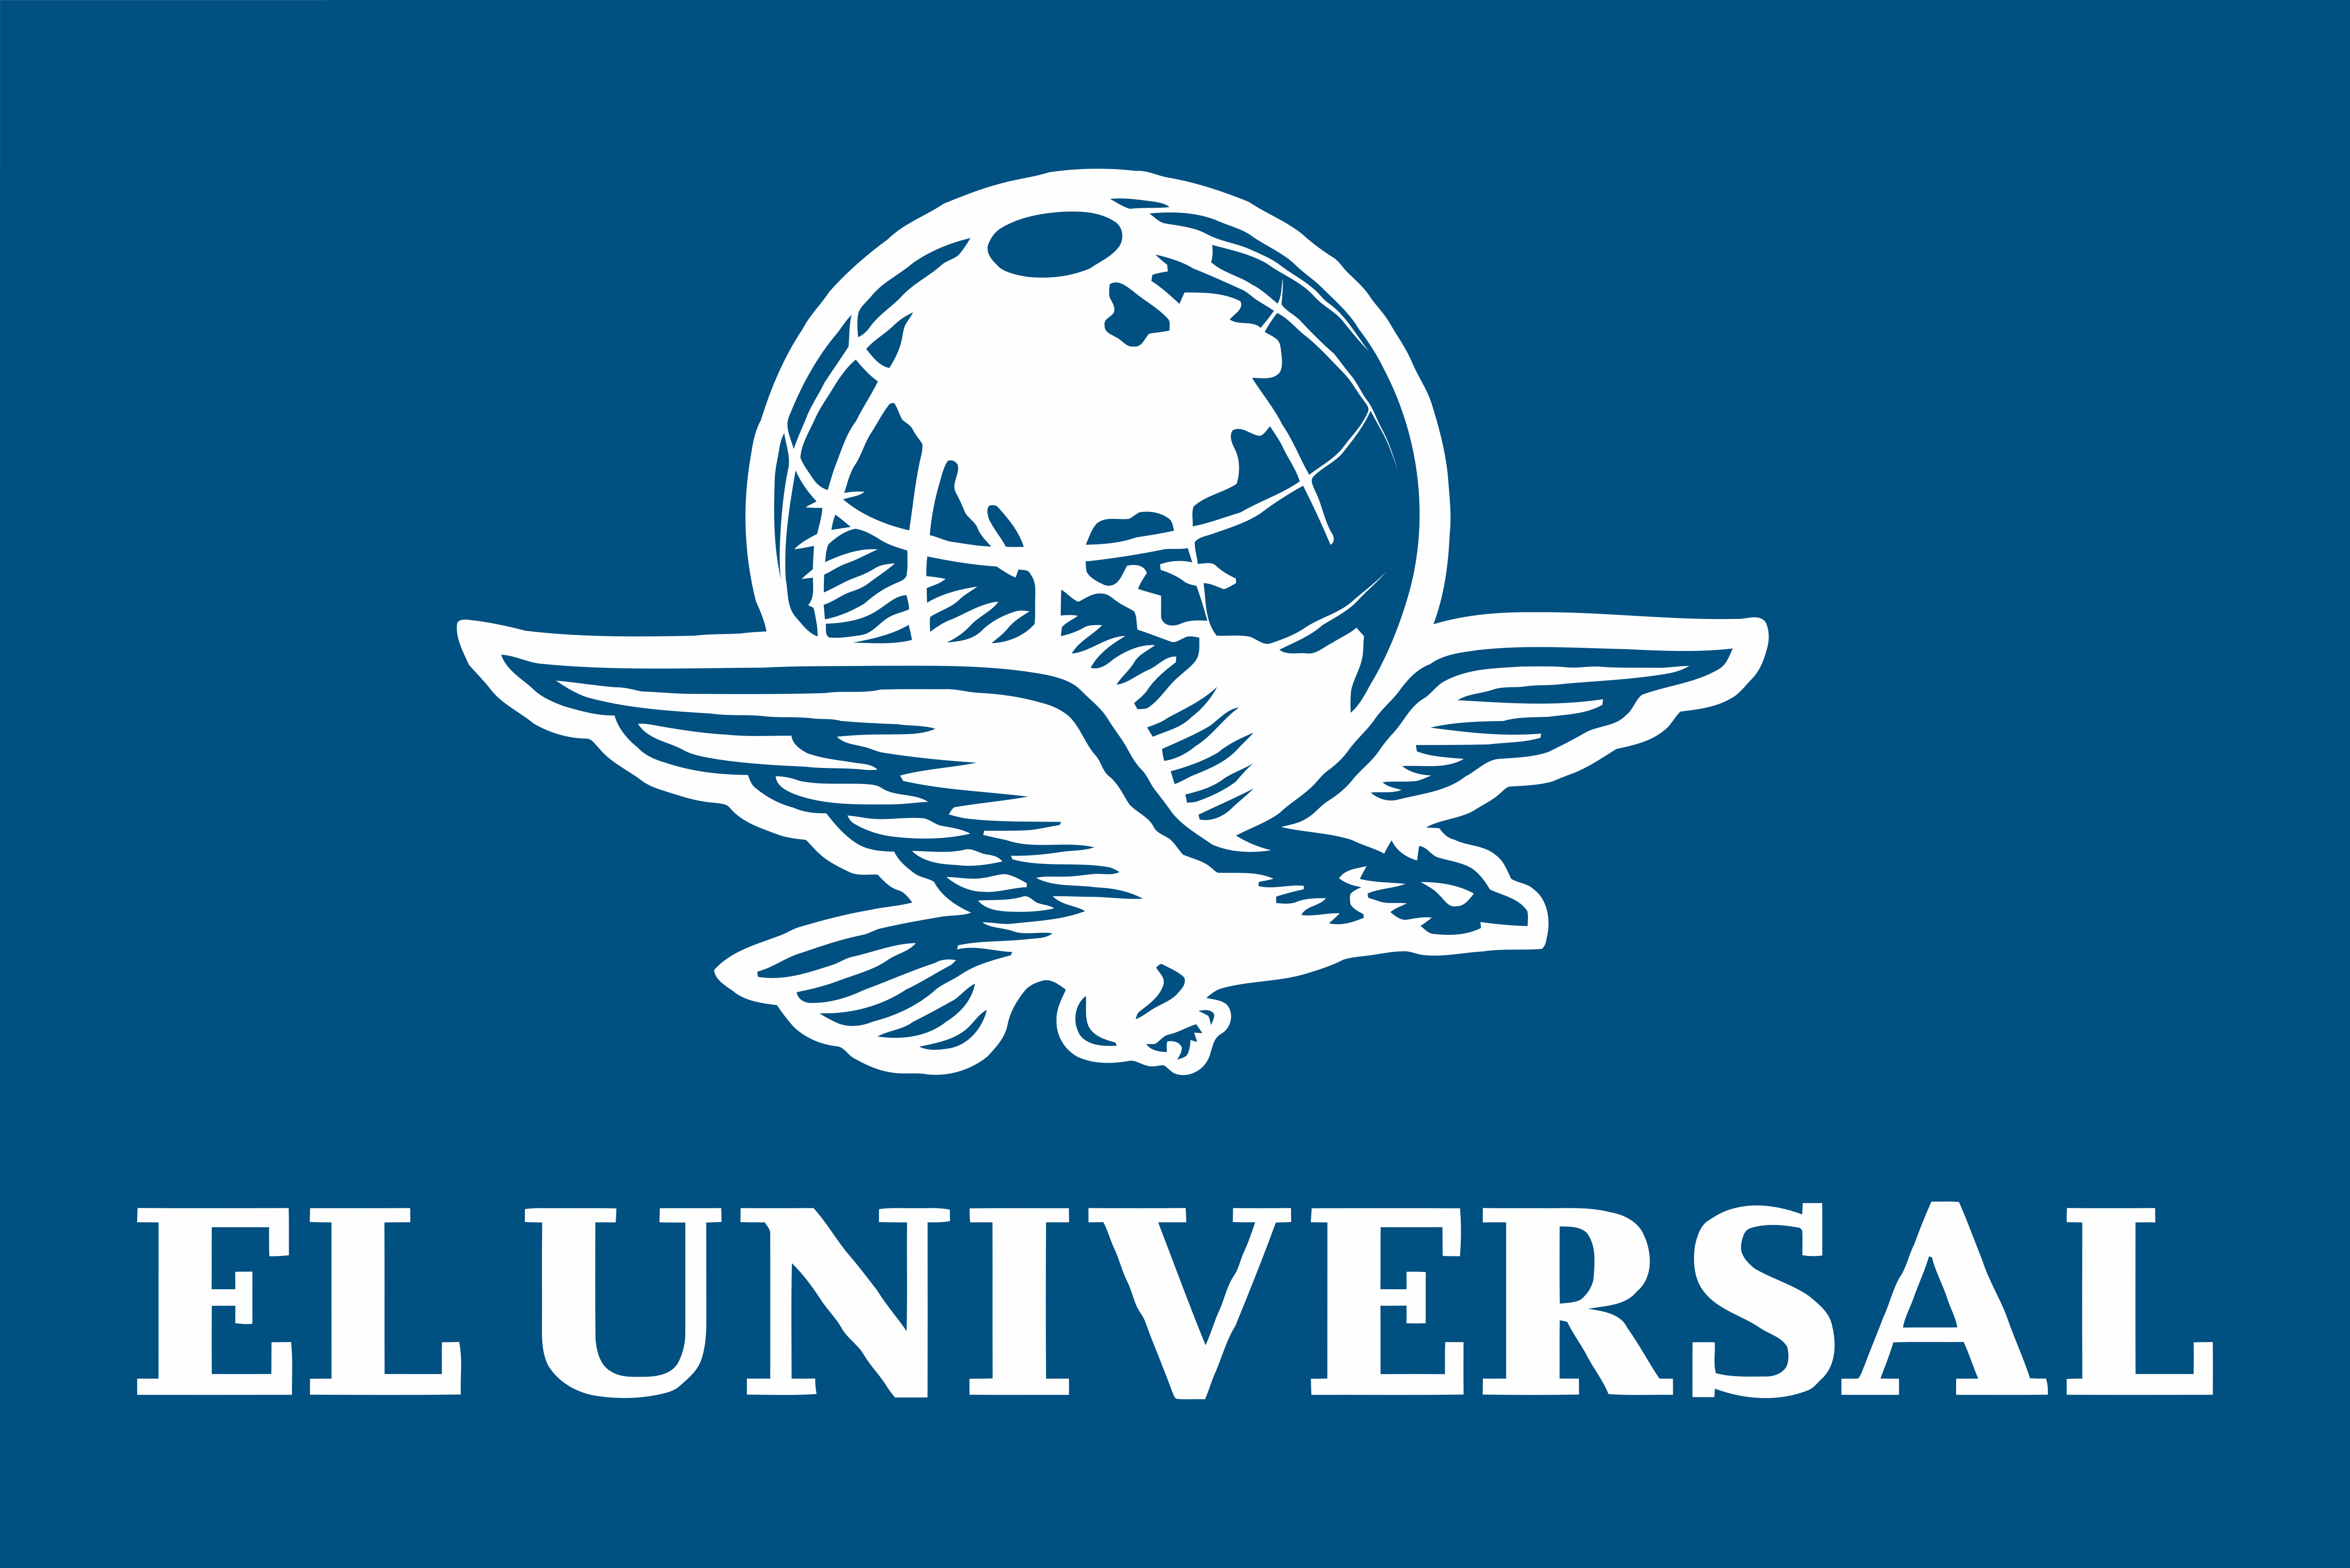 El top 98 imagen el universal logo png - Abzlocal.mx